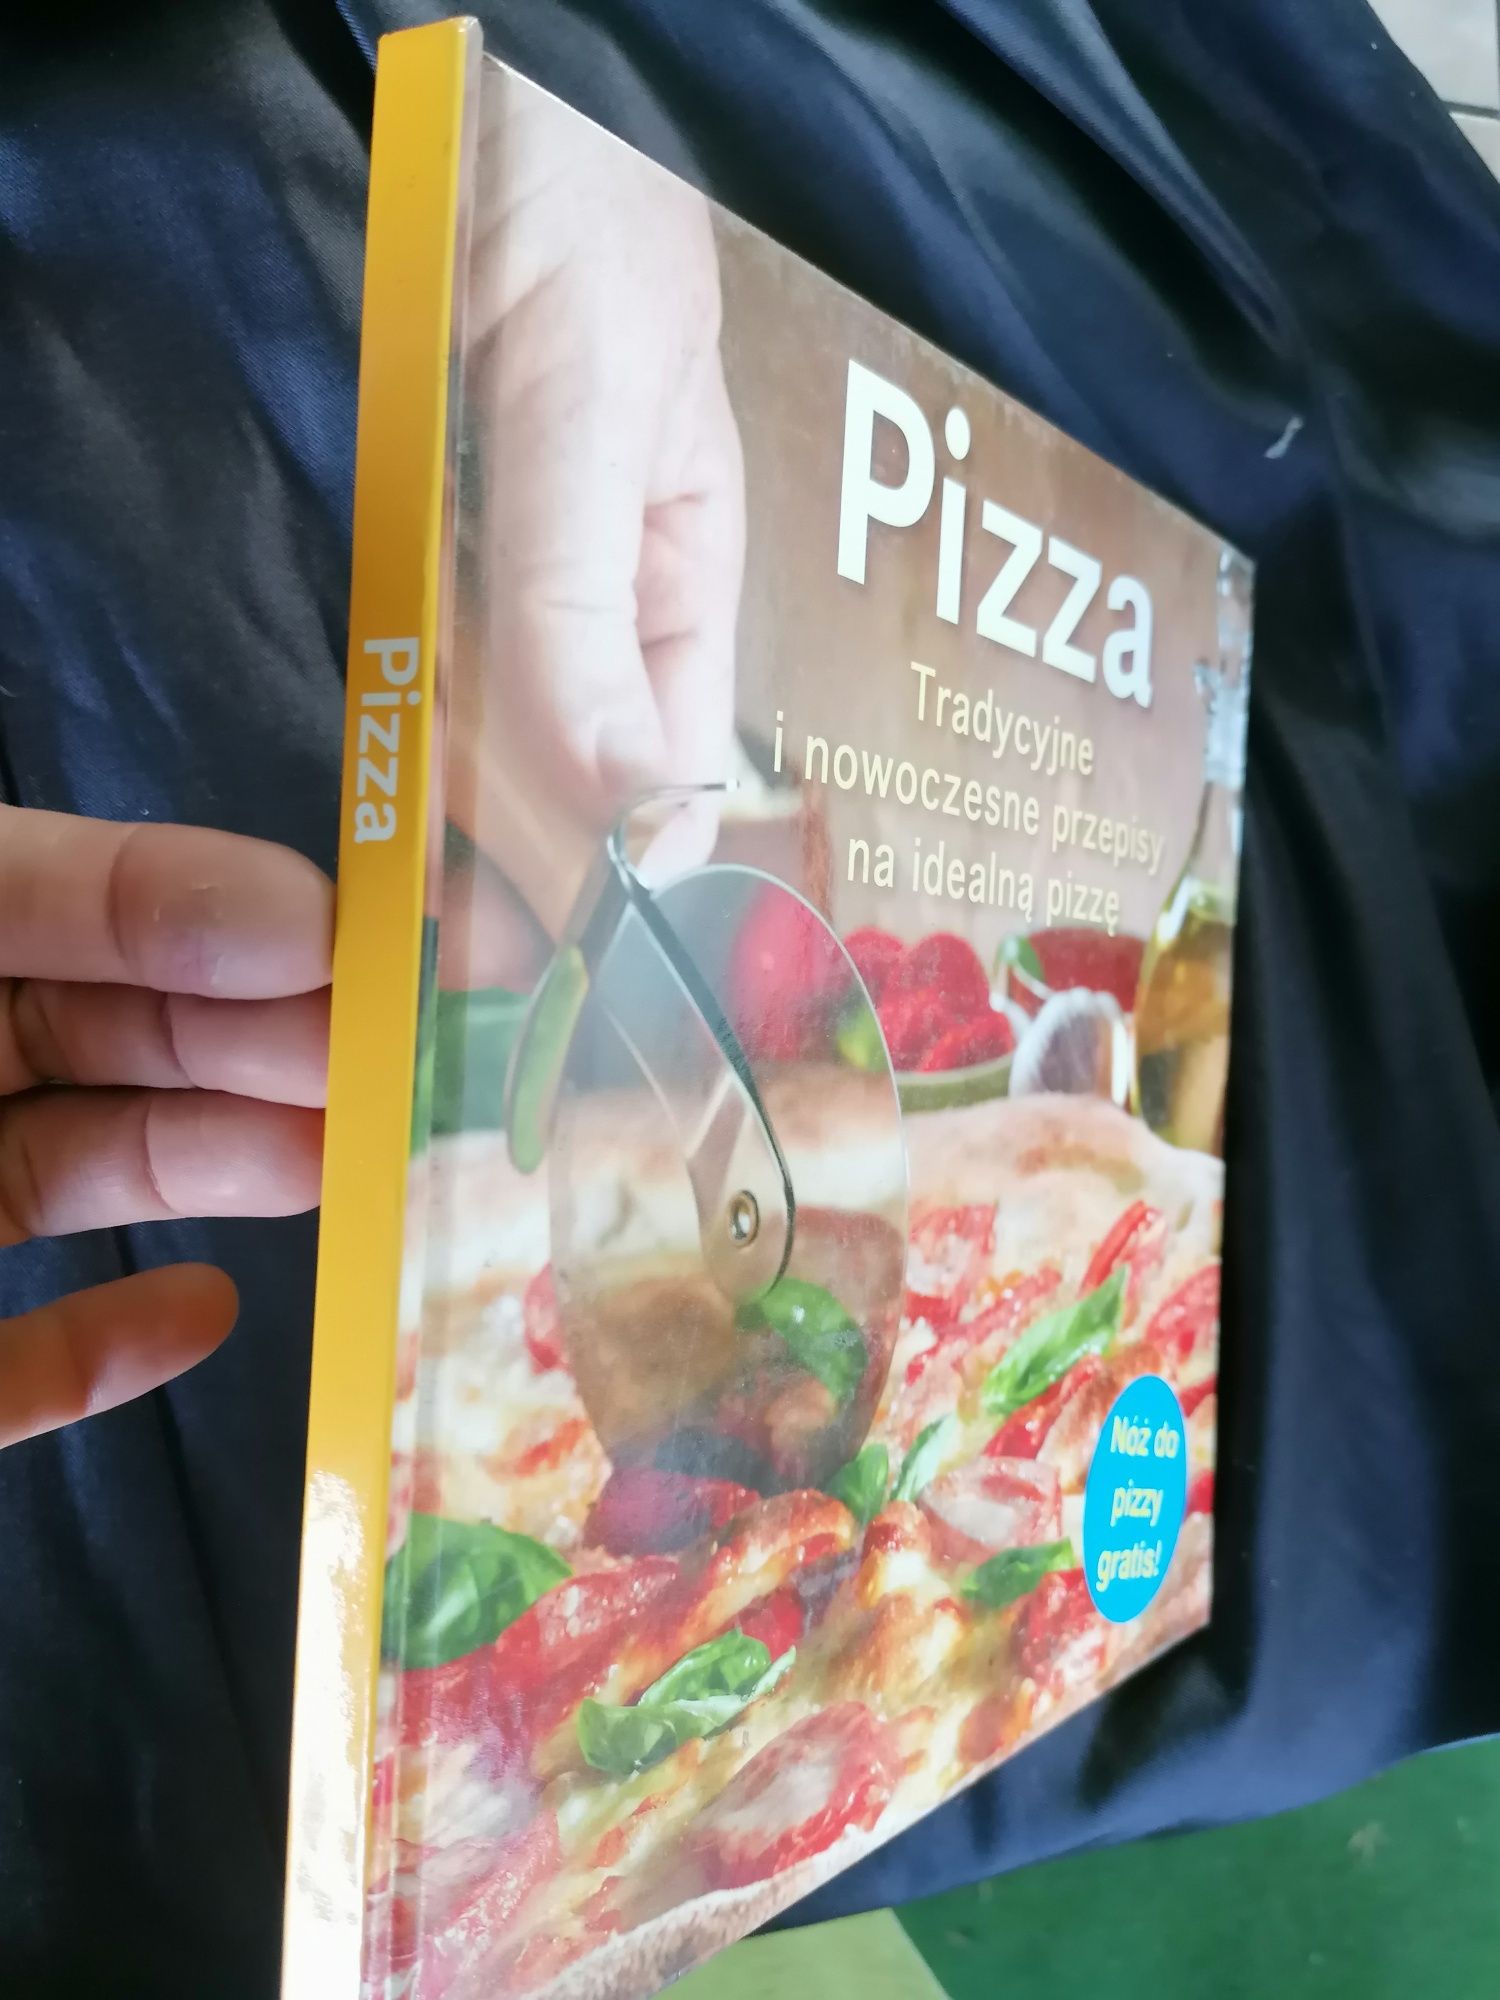 Książka Pizza - tradycyjne i nowoczesne przepisy